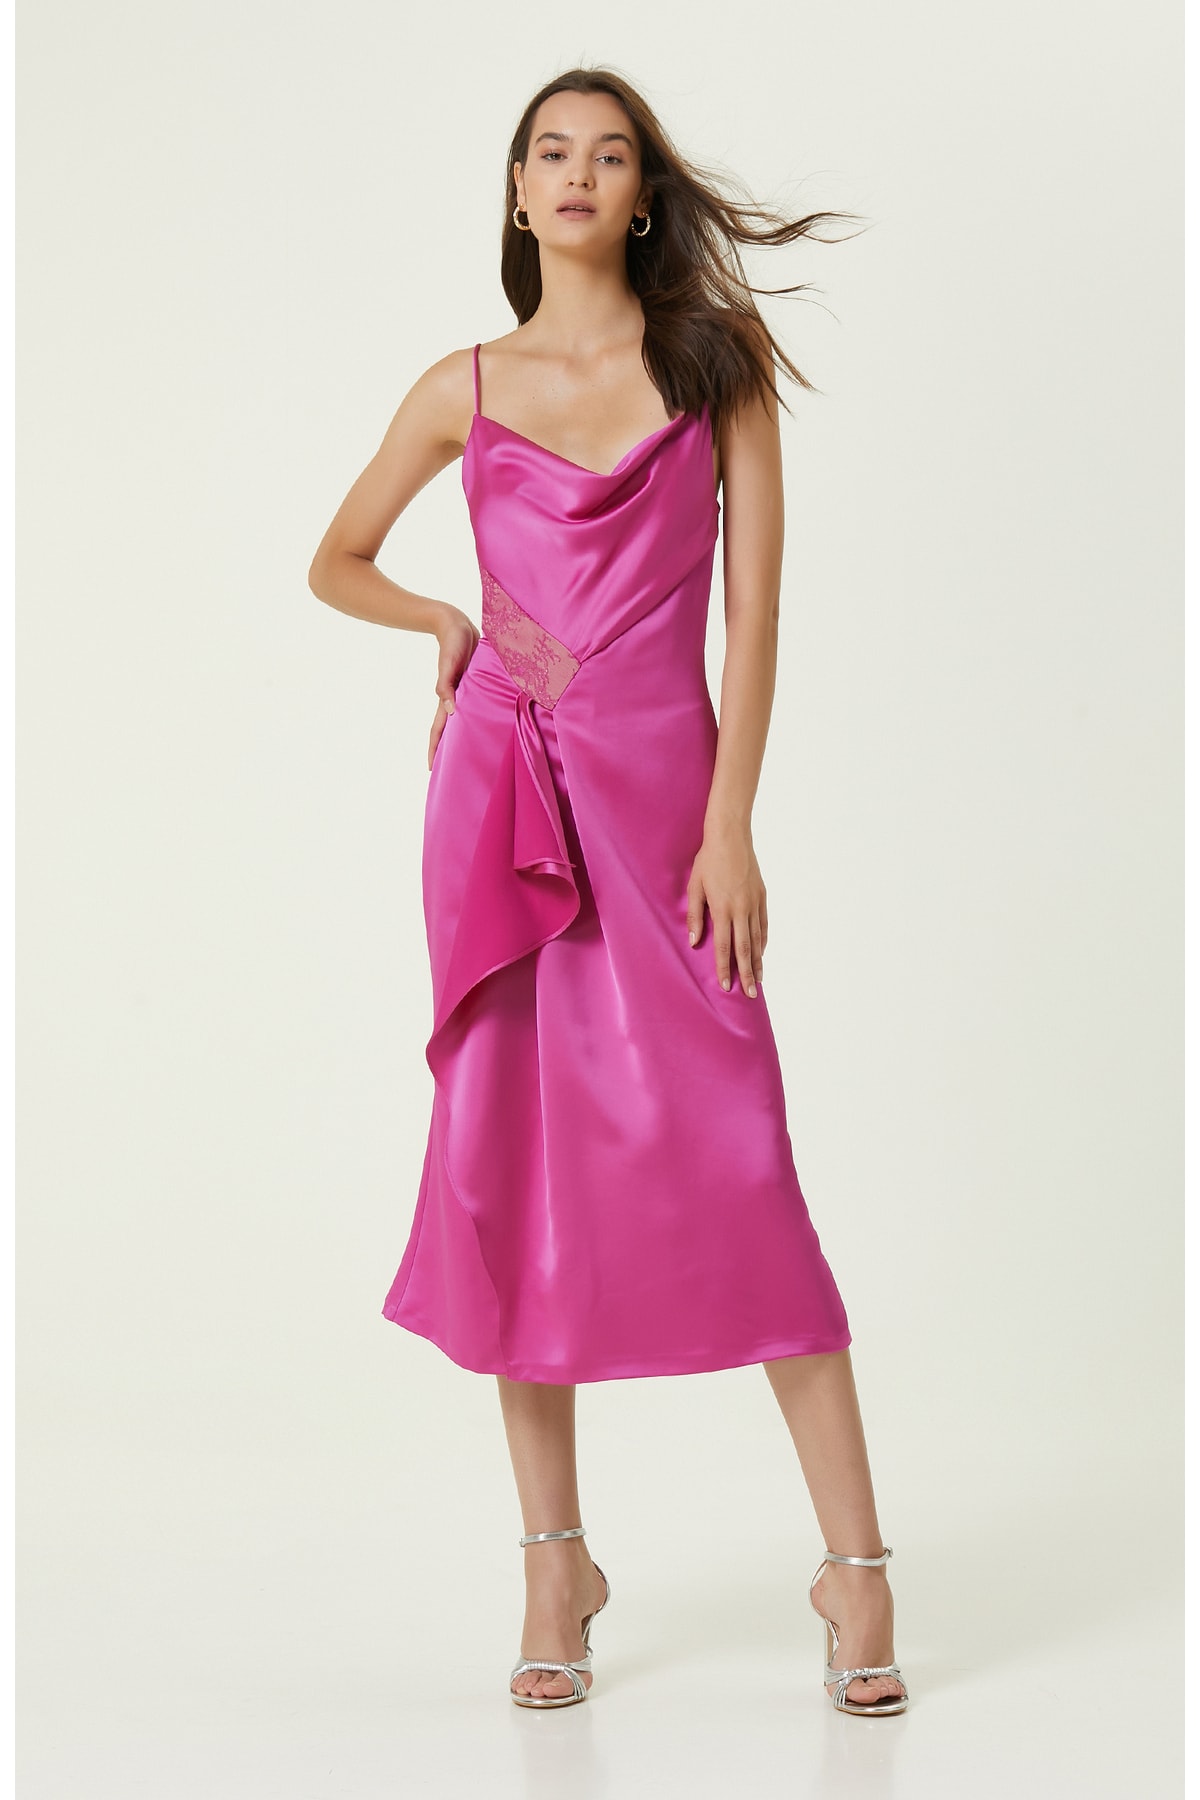 Длинное вечернее платье цвета фуксии Network, розовый мини платье цвета фуксии network